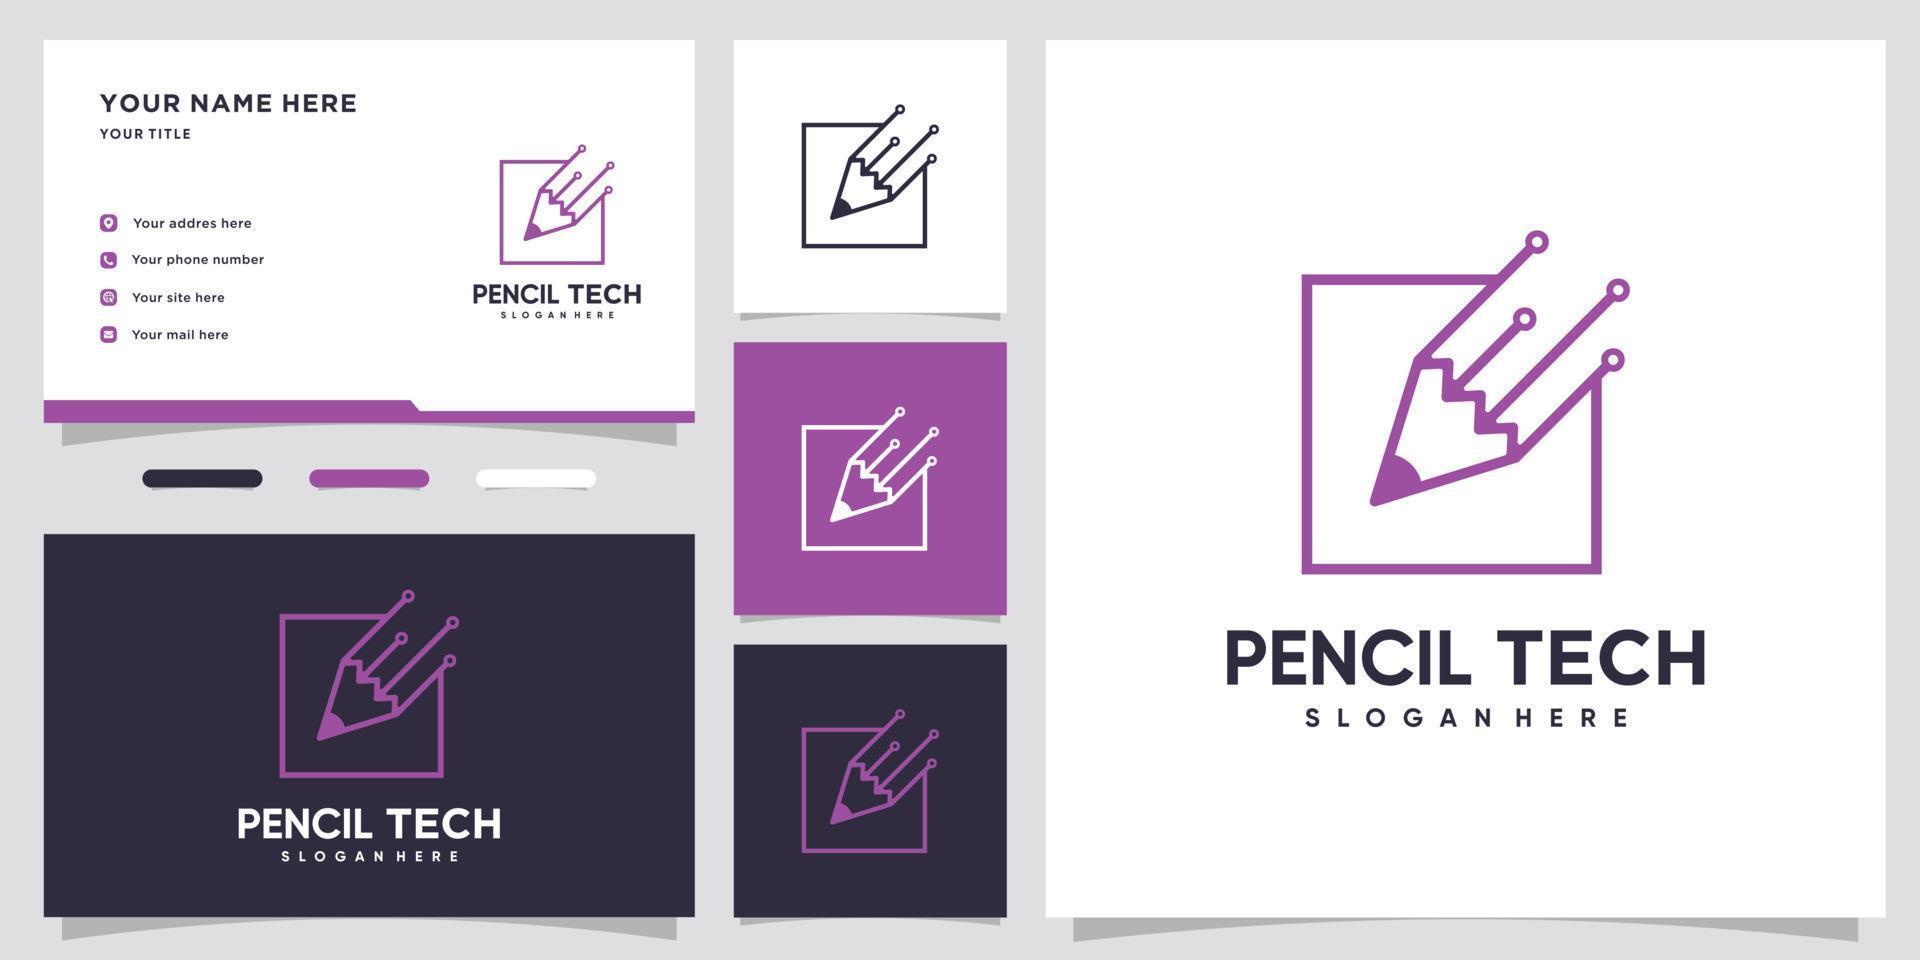 Pencil tech logo design with style and creative concept vector